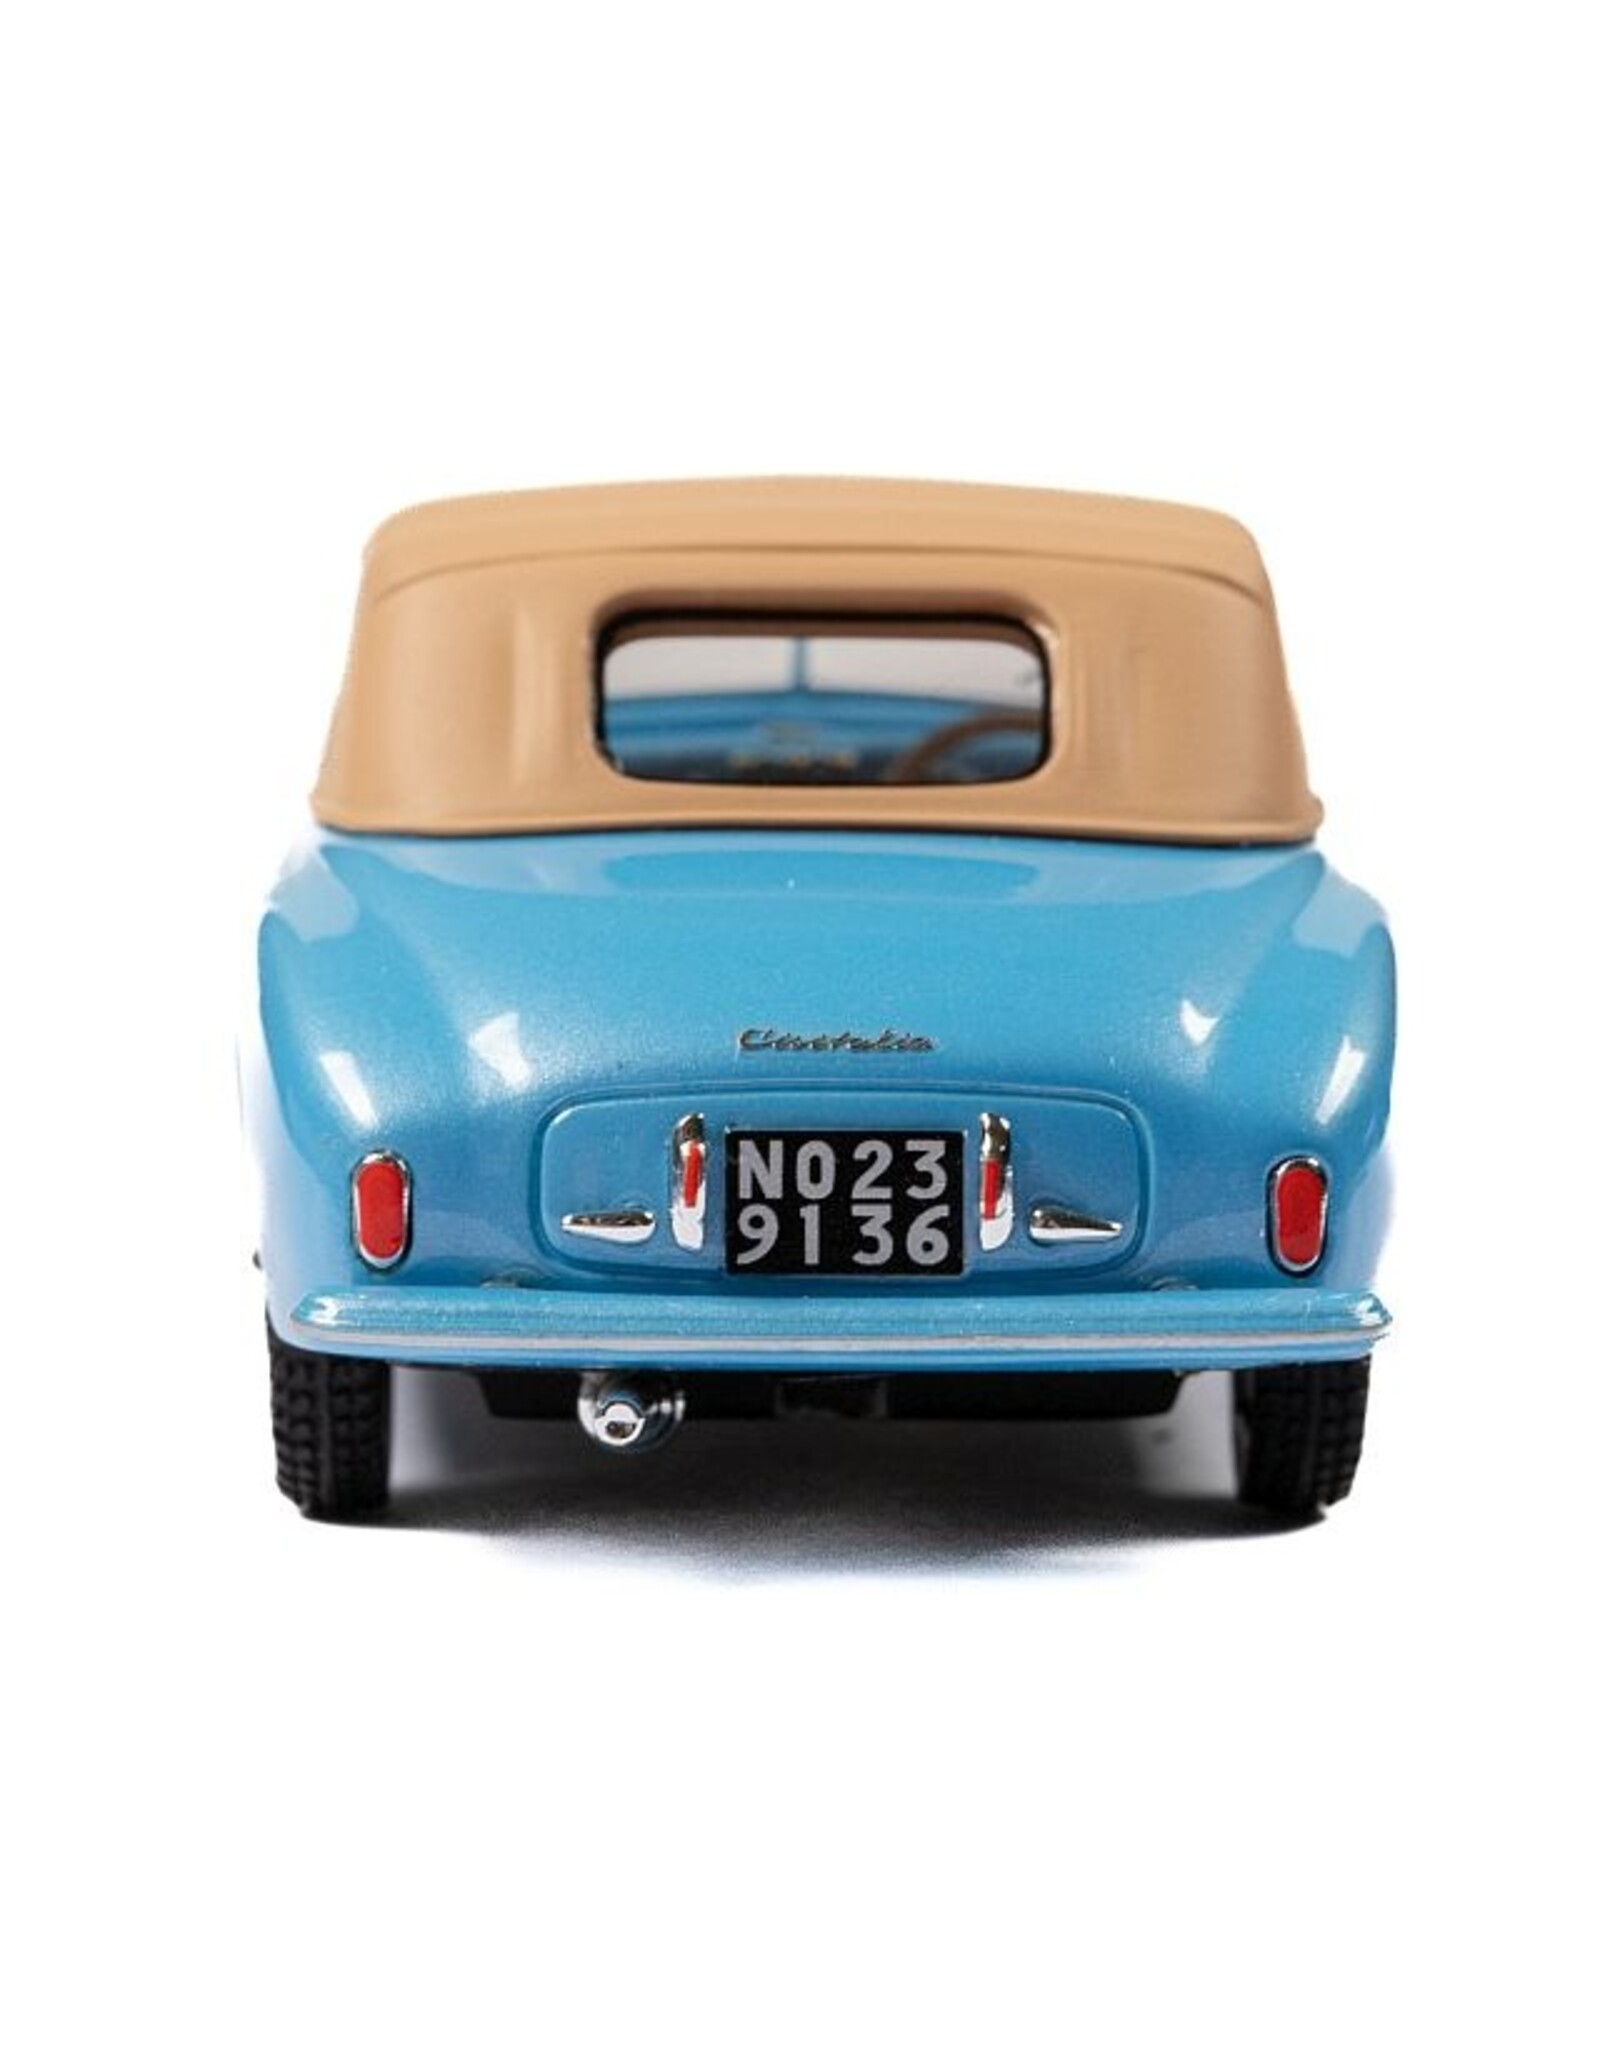 Cisitalia by Stabilimenti Farina Cisitalia 202 SC(1947)cabriolet by Stabilimenti Farina(closed roof)blue